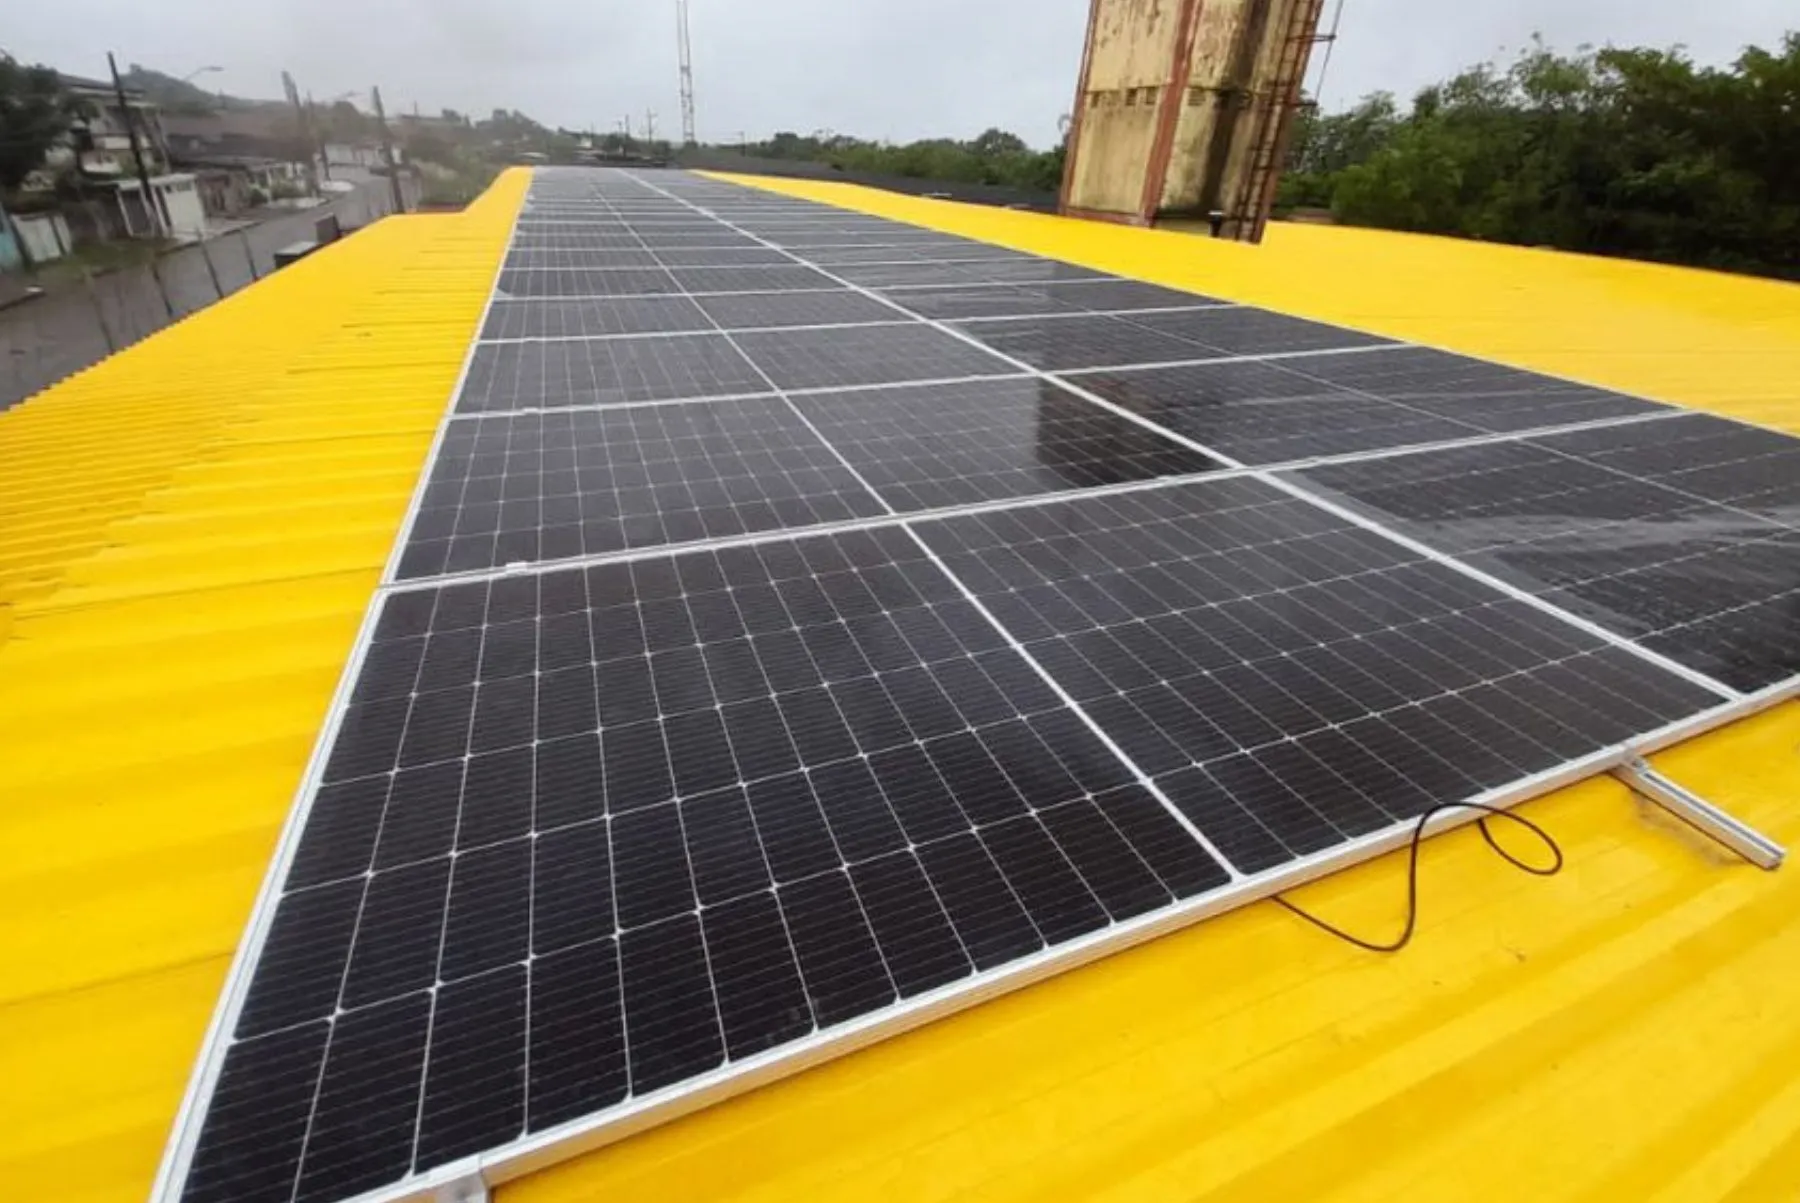 Composto por painéis solares de potência mínima 450W cada, o sistema possui eficiência energética de 20,6%